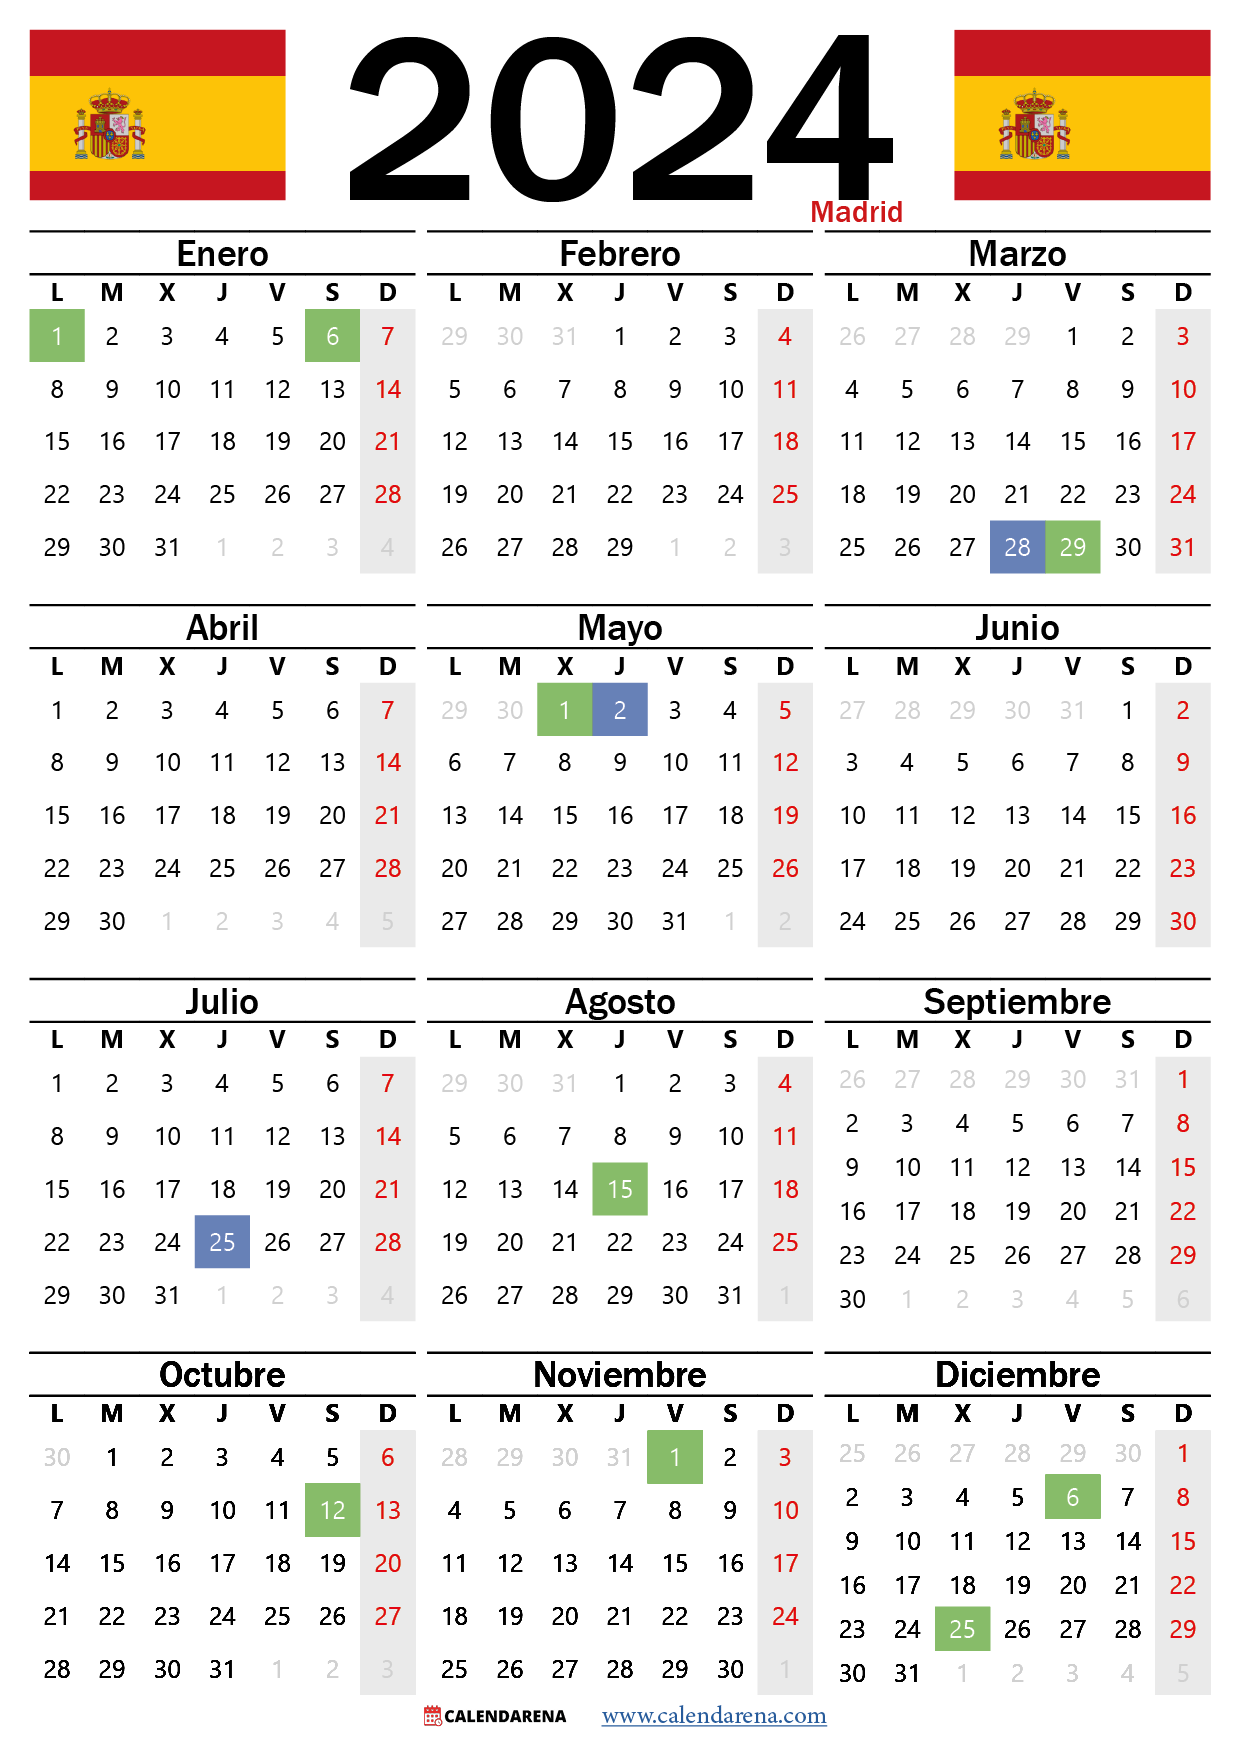 Calendario Laboral Madrid 2024